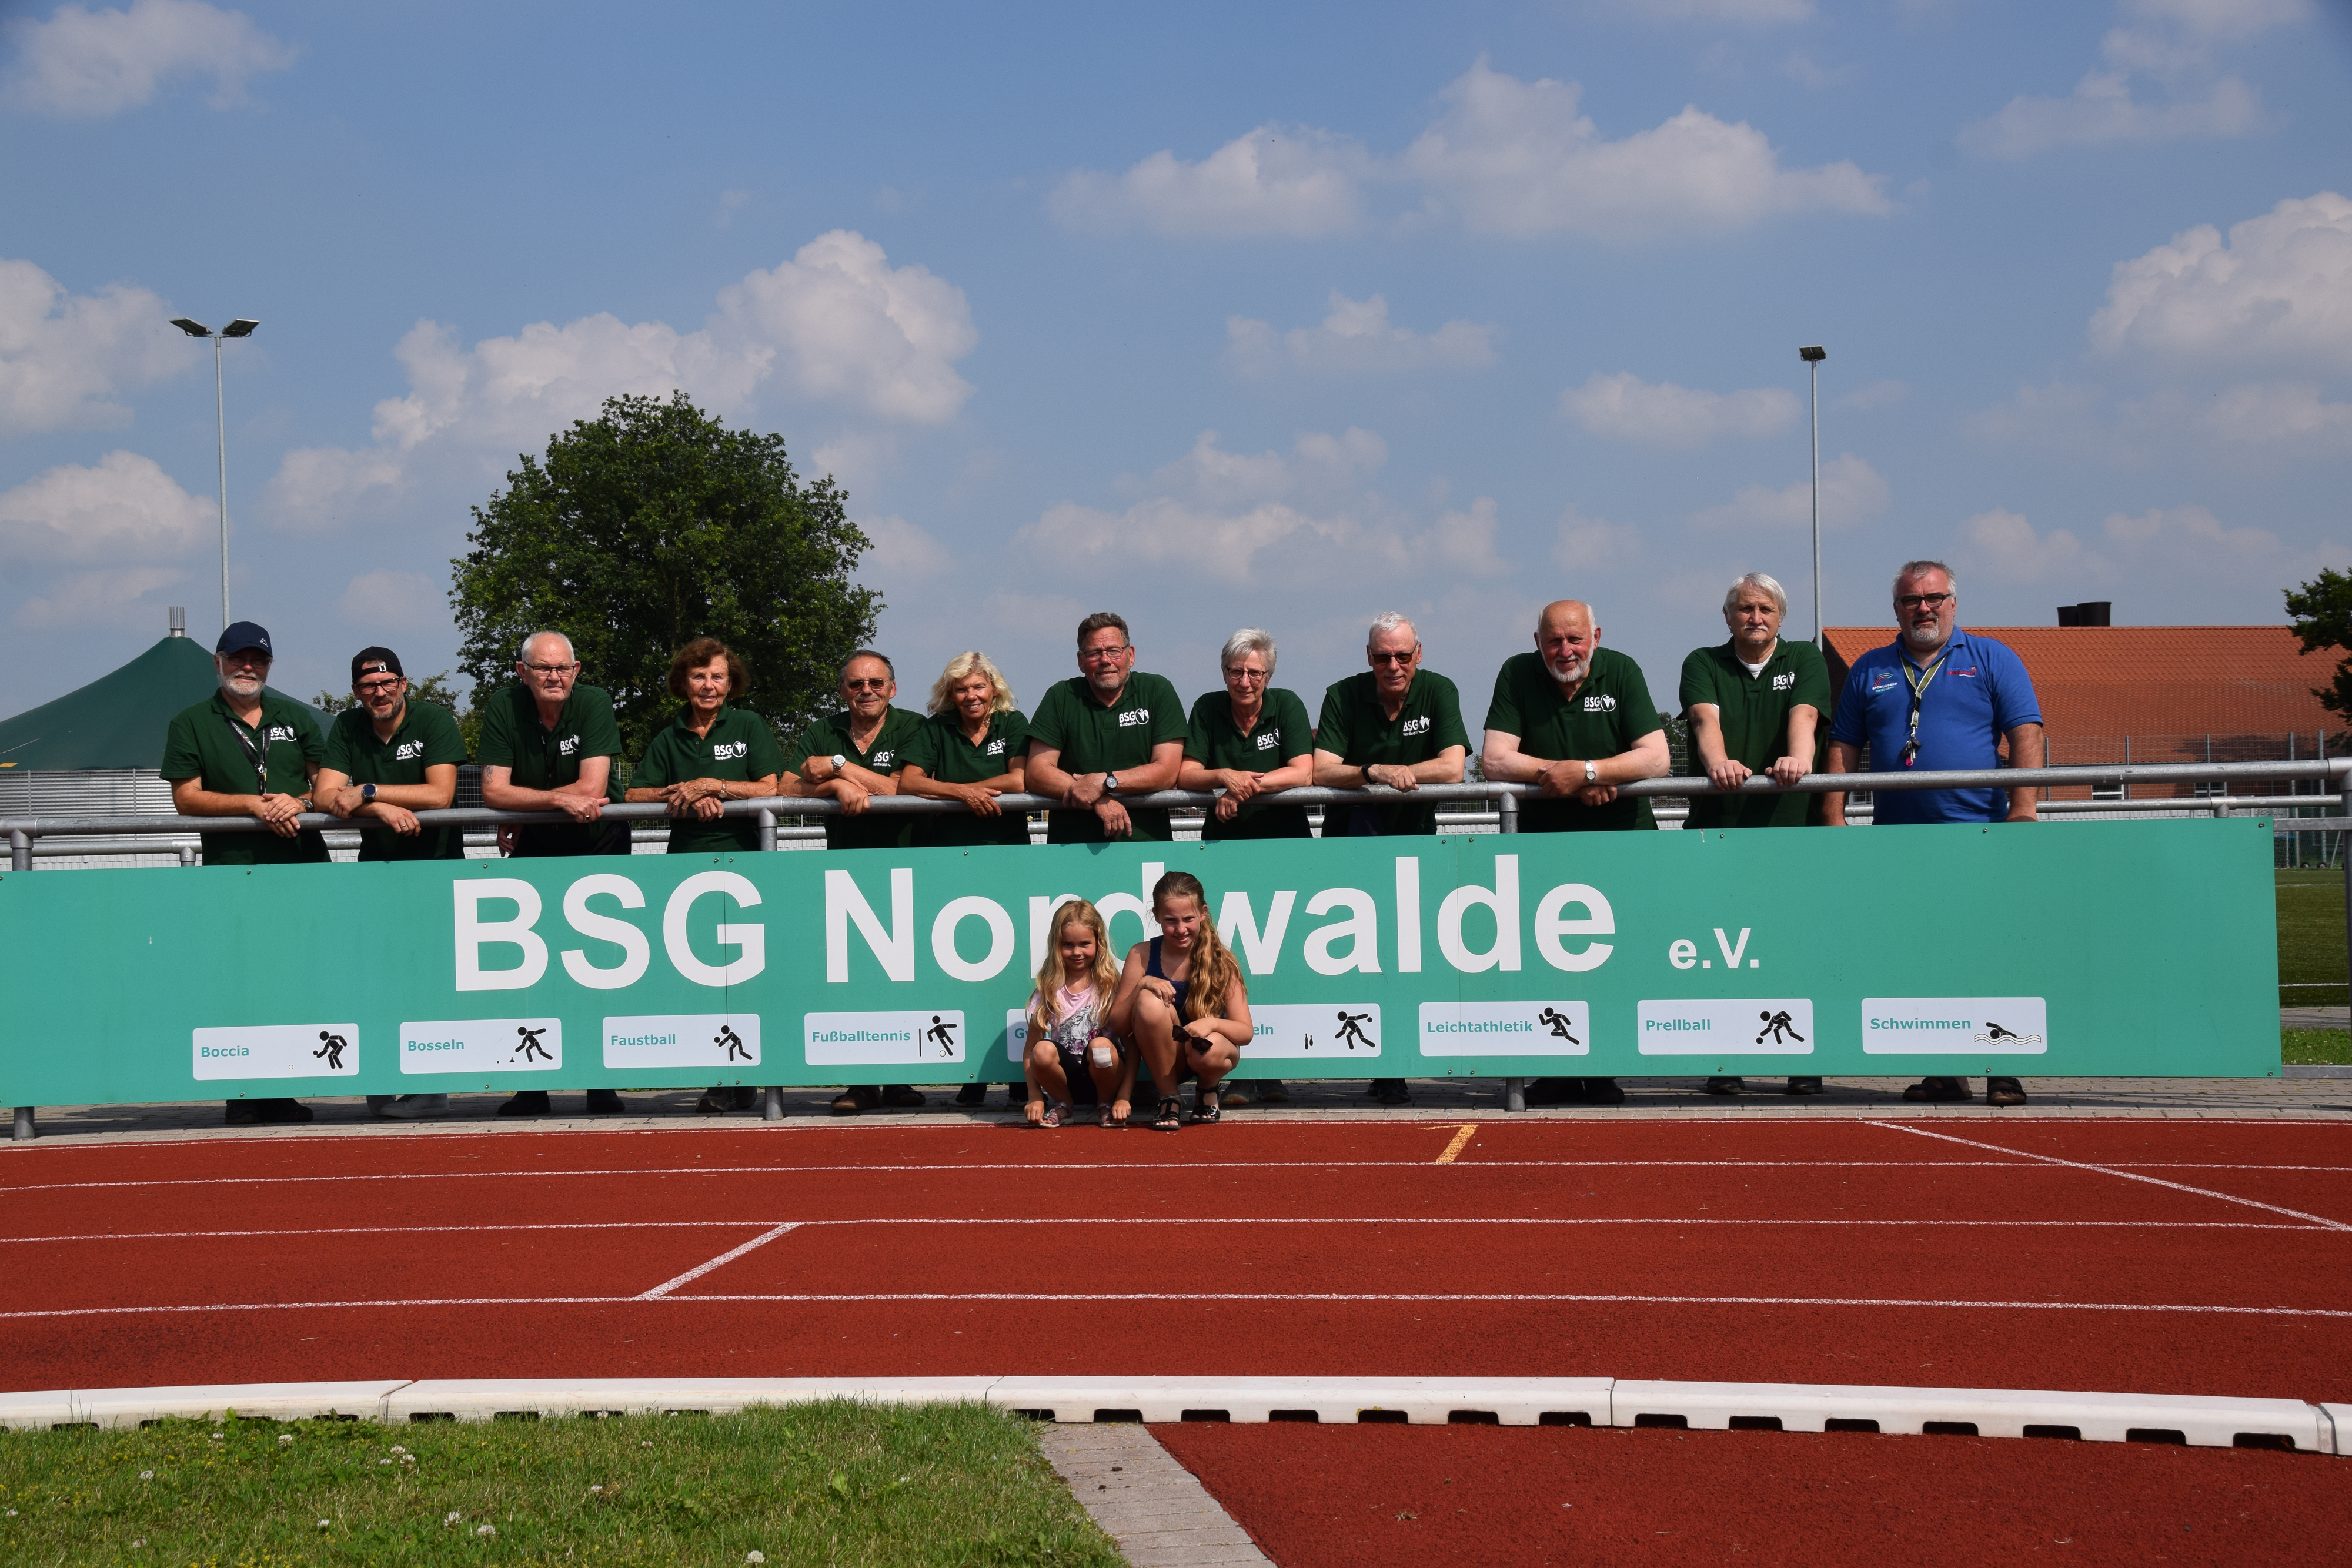 Sportplatz Mitglieder BSG Nordwalde